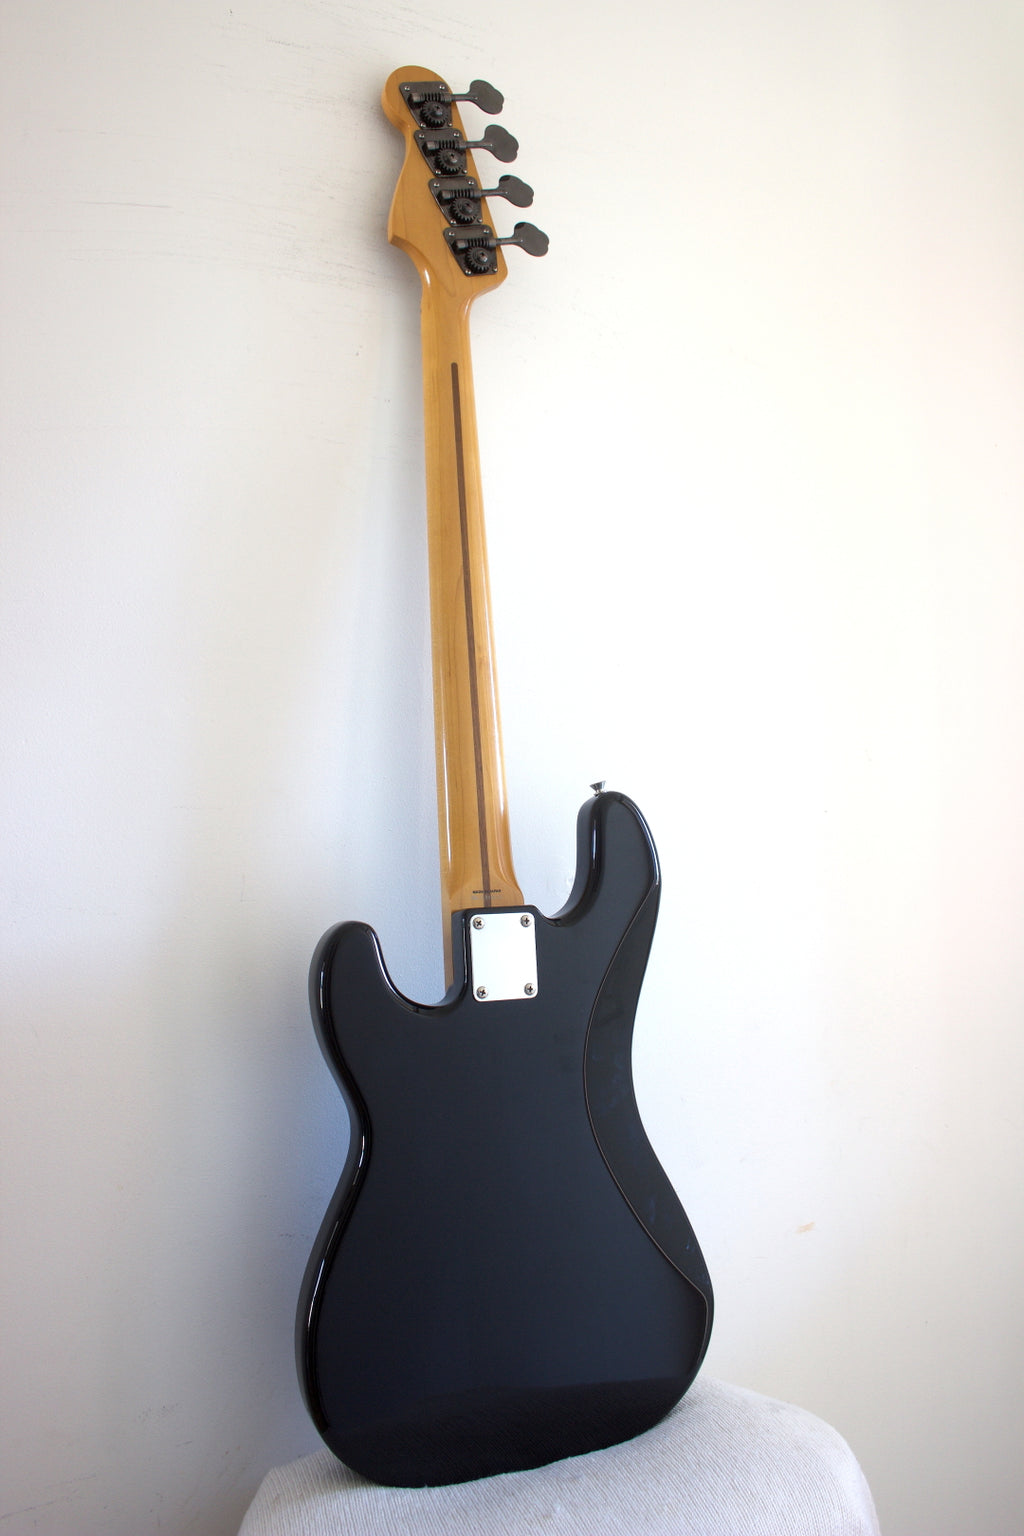 Fender Japan '57 Reissue Precision Bass Modded Black 2010/11